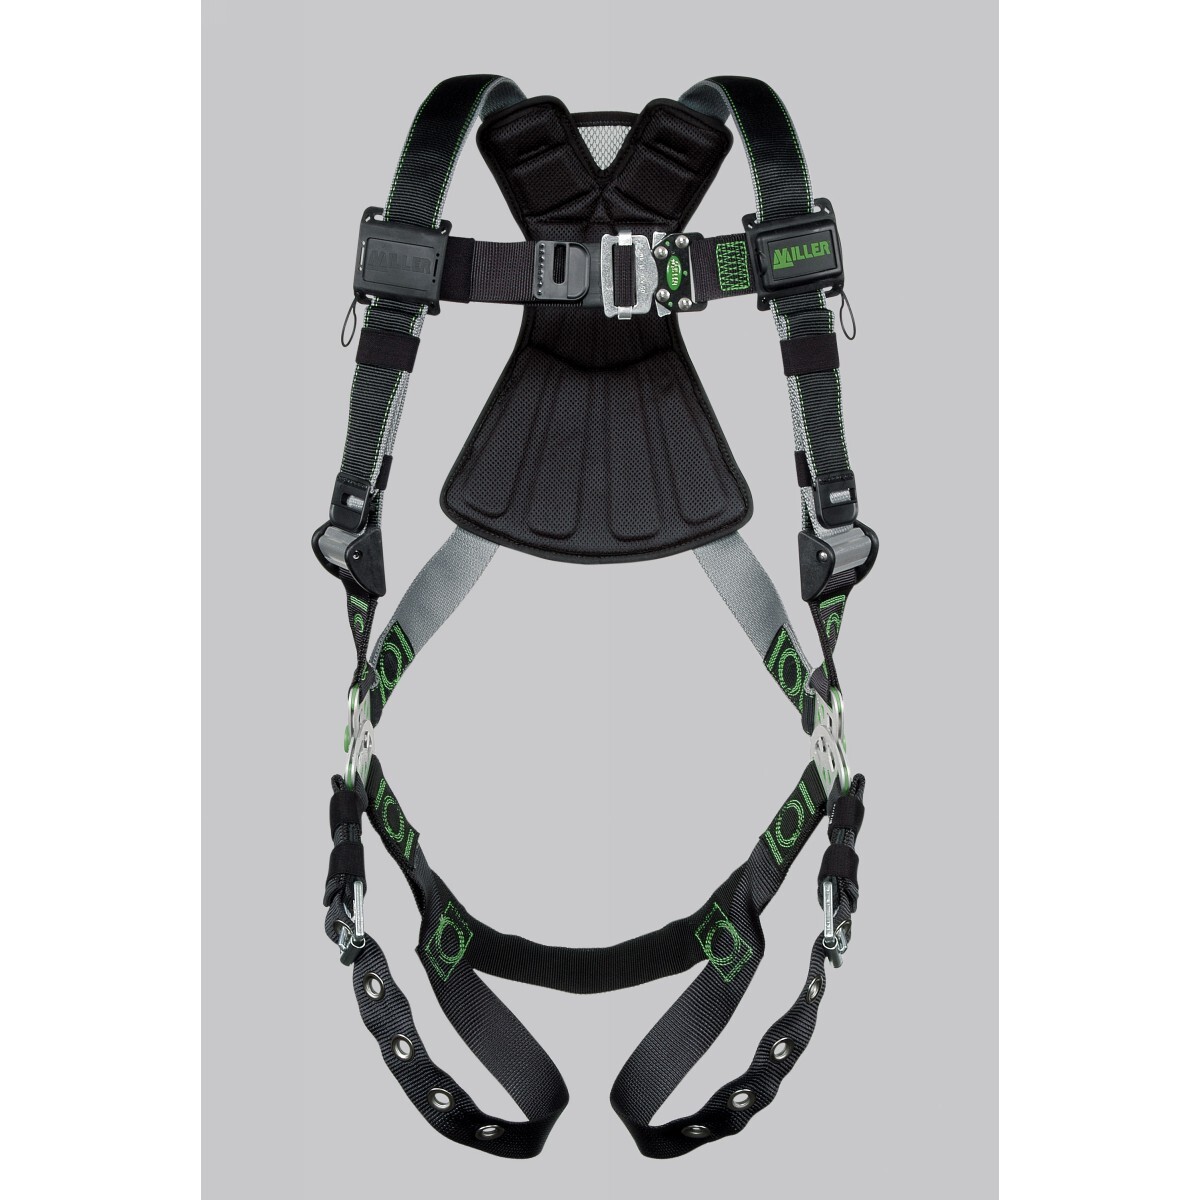 Honeywell Miller® Revolution™ Universal Vest Style Full Body Harness